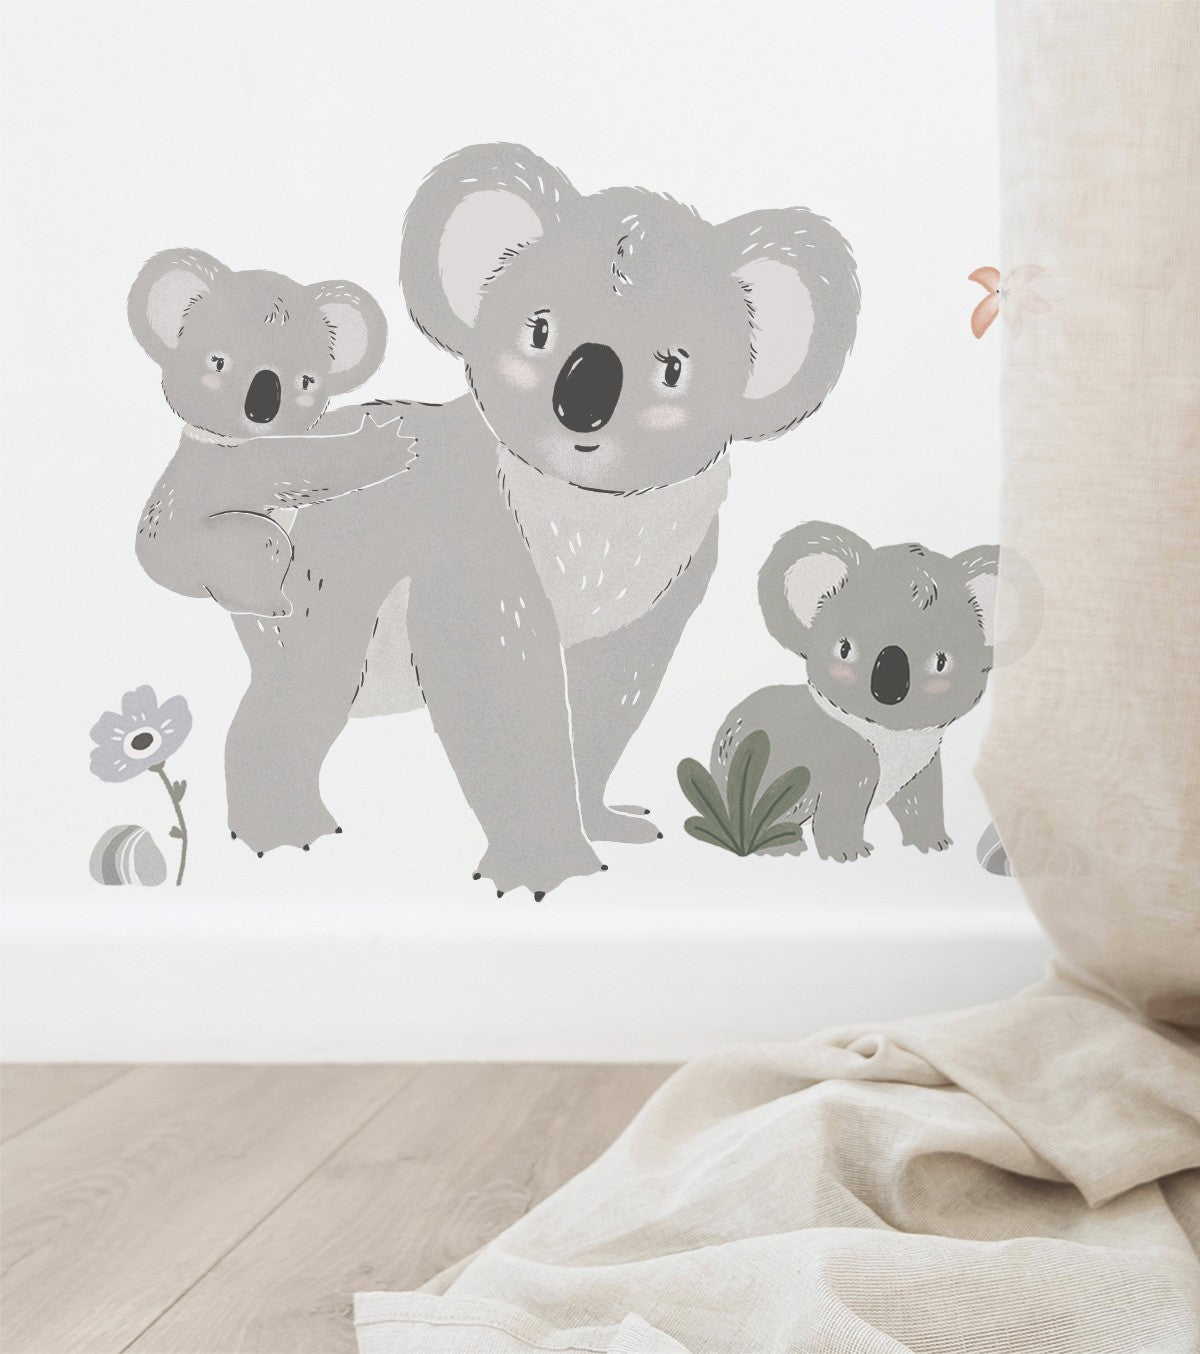 LILYDALE - Autocolante grande - Família Koala